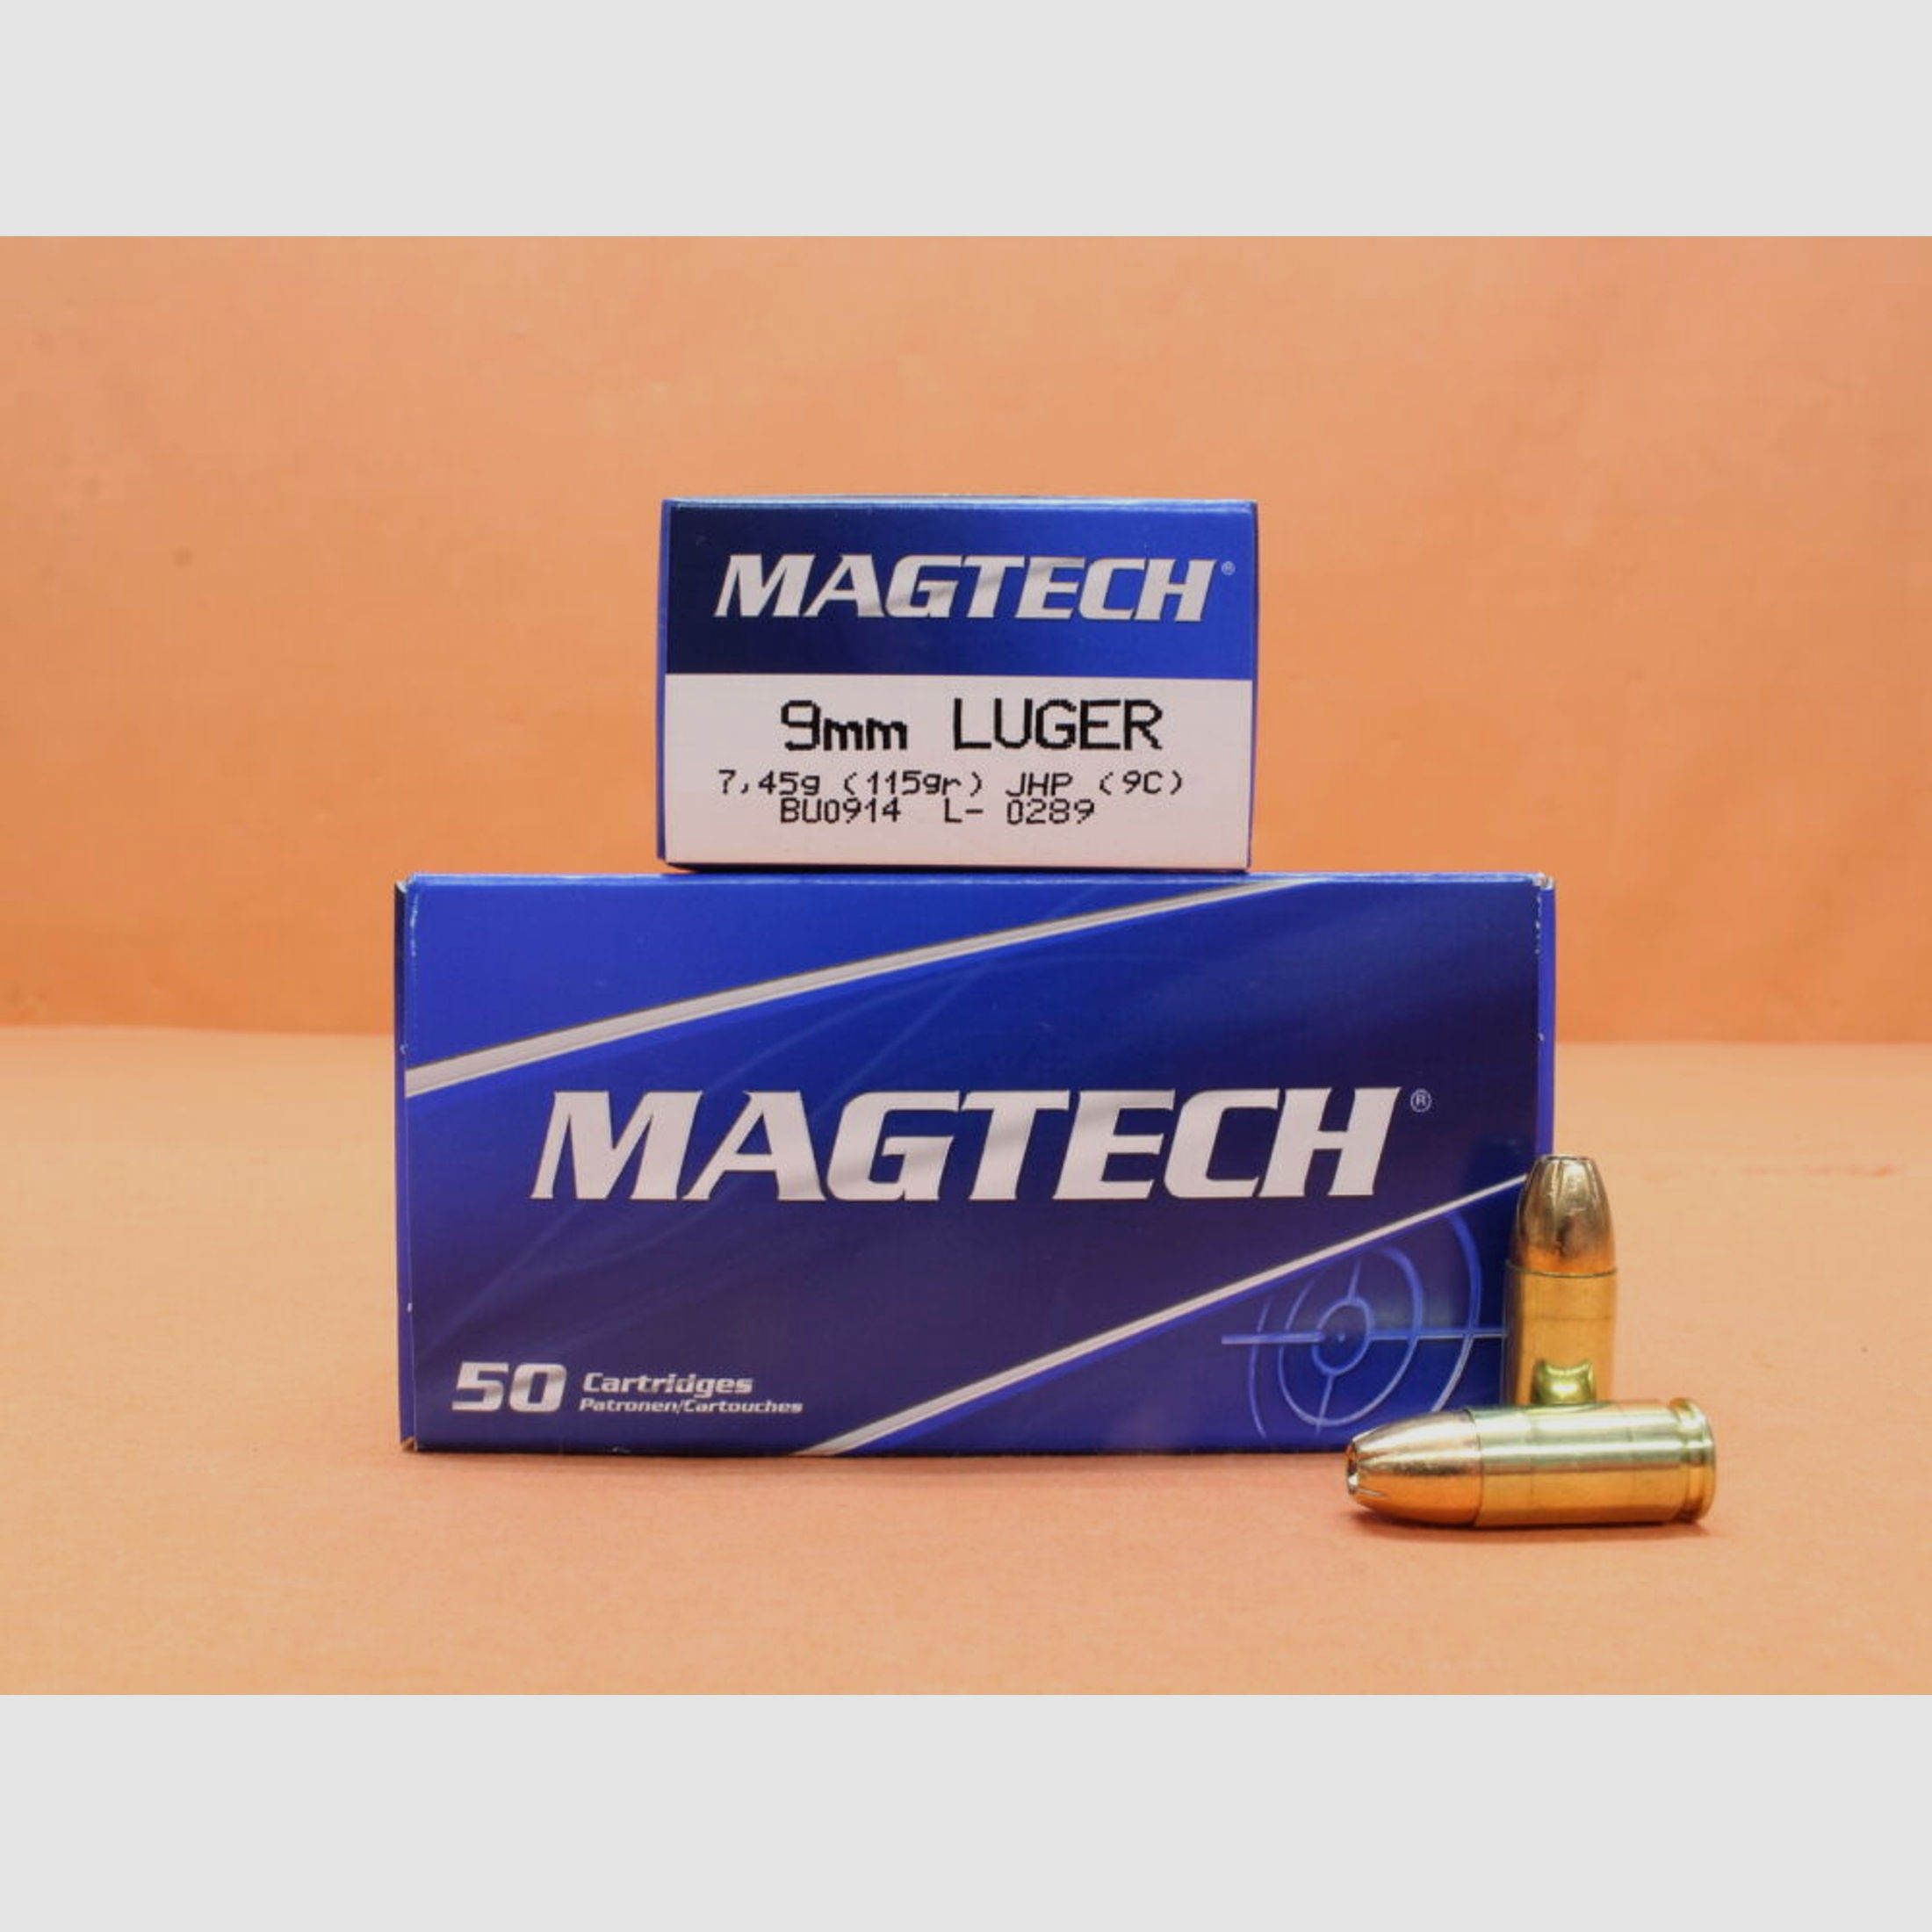 Magtech	 Patrone 9mmLuger Magtech 115grs JHP (9C) VE 50 Patronen/ 7,45g Teilmantel-Hohlspitz